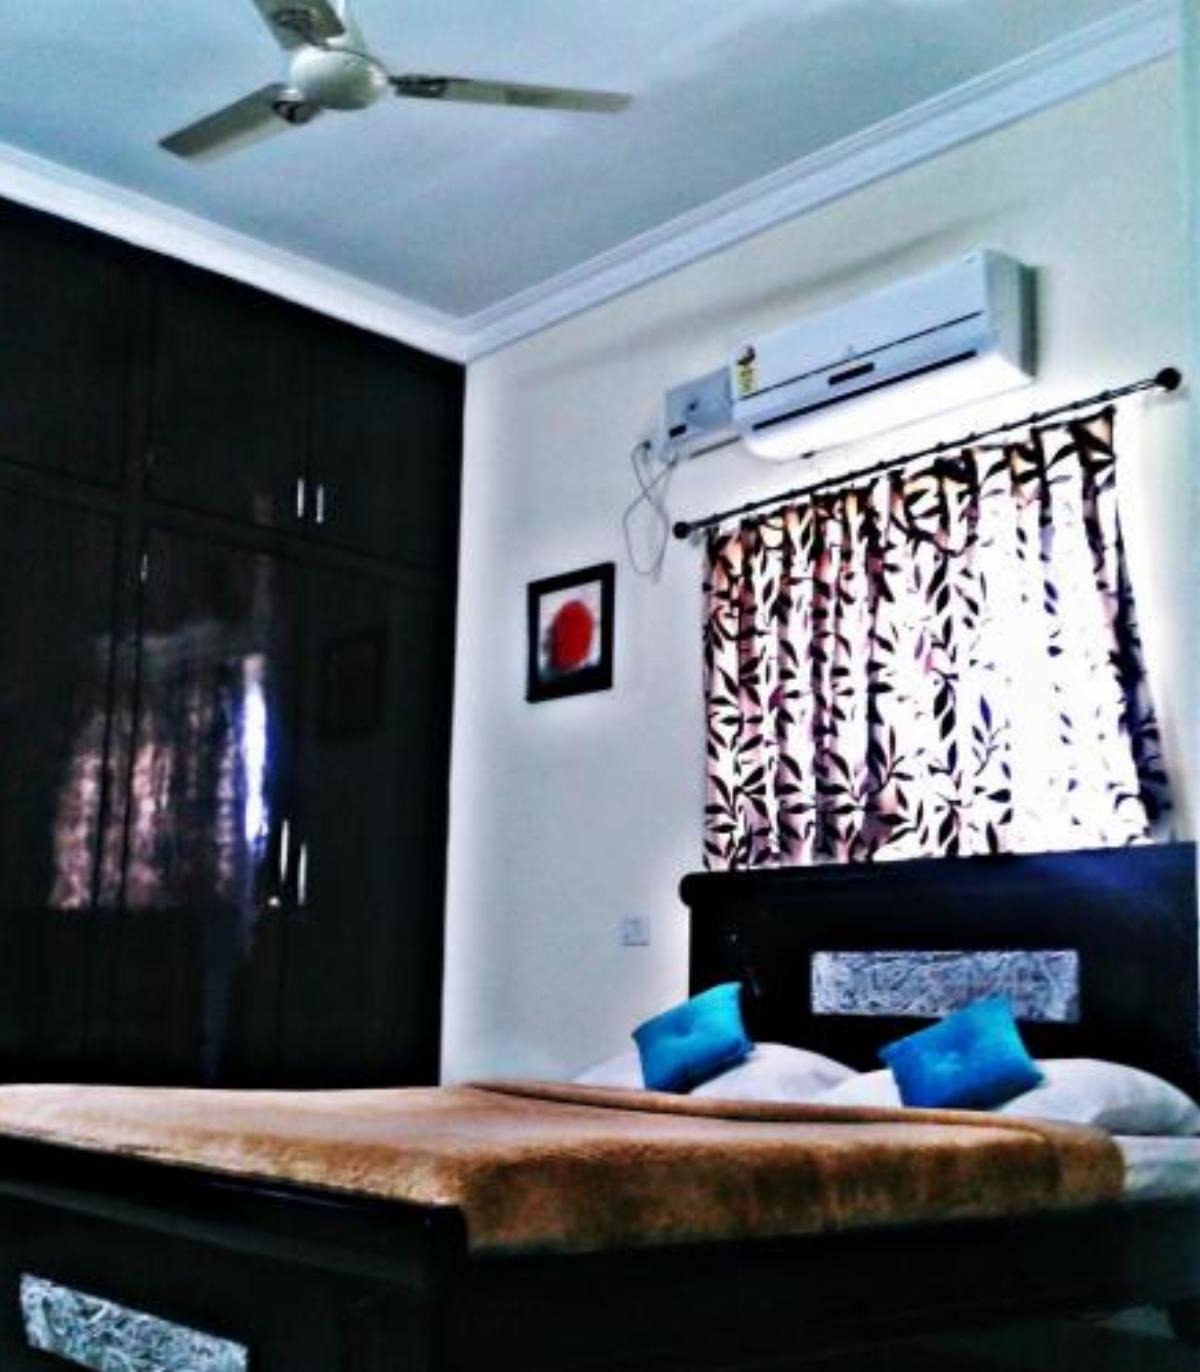 Leeflex Serviced Apartment Hotel Bhubaneshwar India